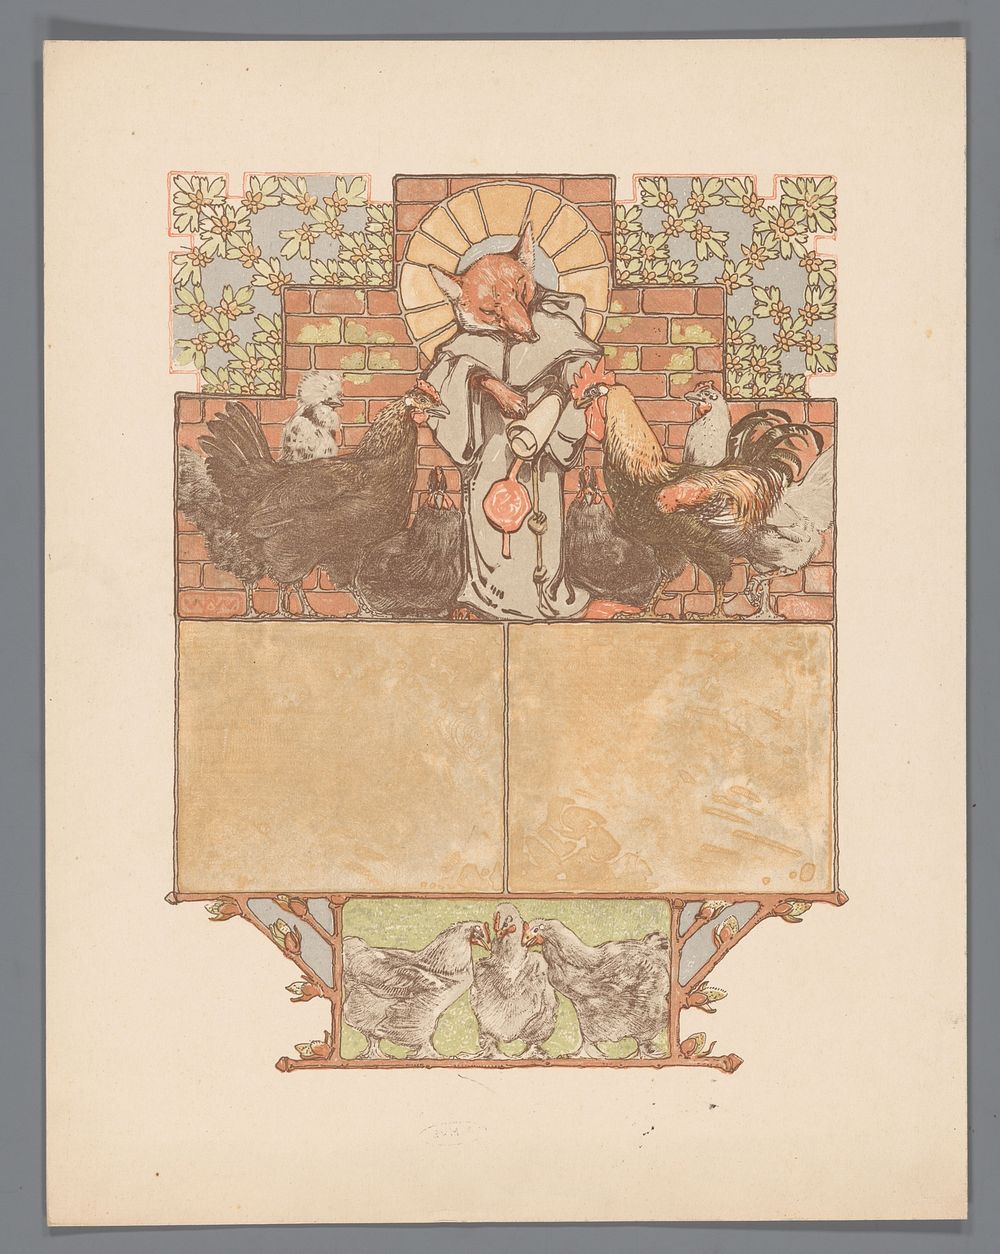 Vos in monnikspij (Reinaert) omringd door kippen en haan (Cantecleer) (c. 1910) by Bernard Willem Wierink